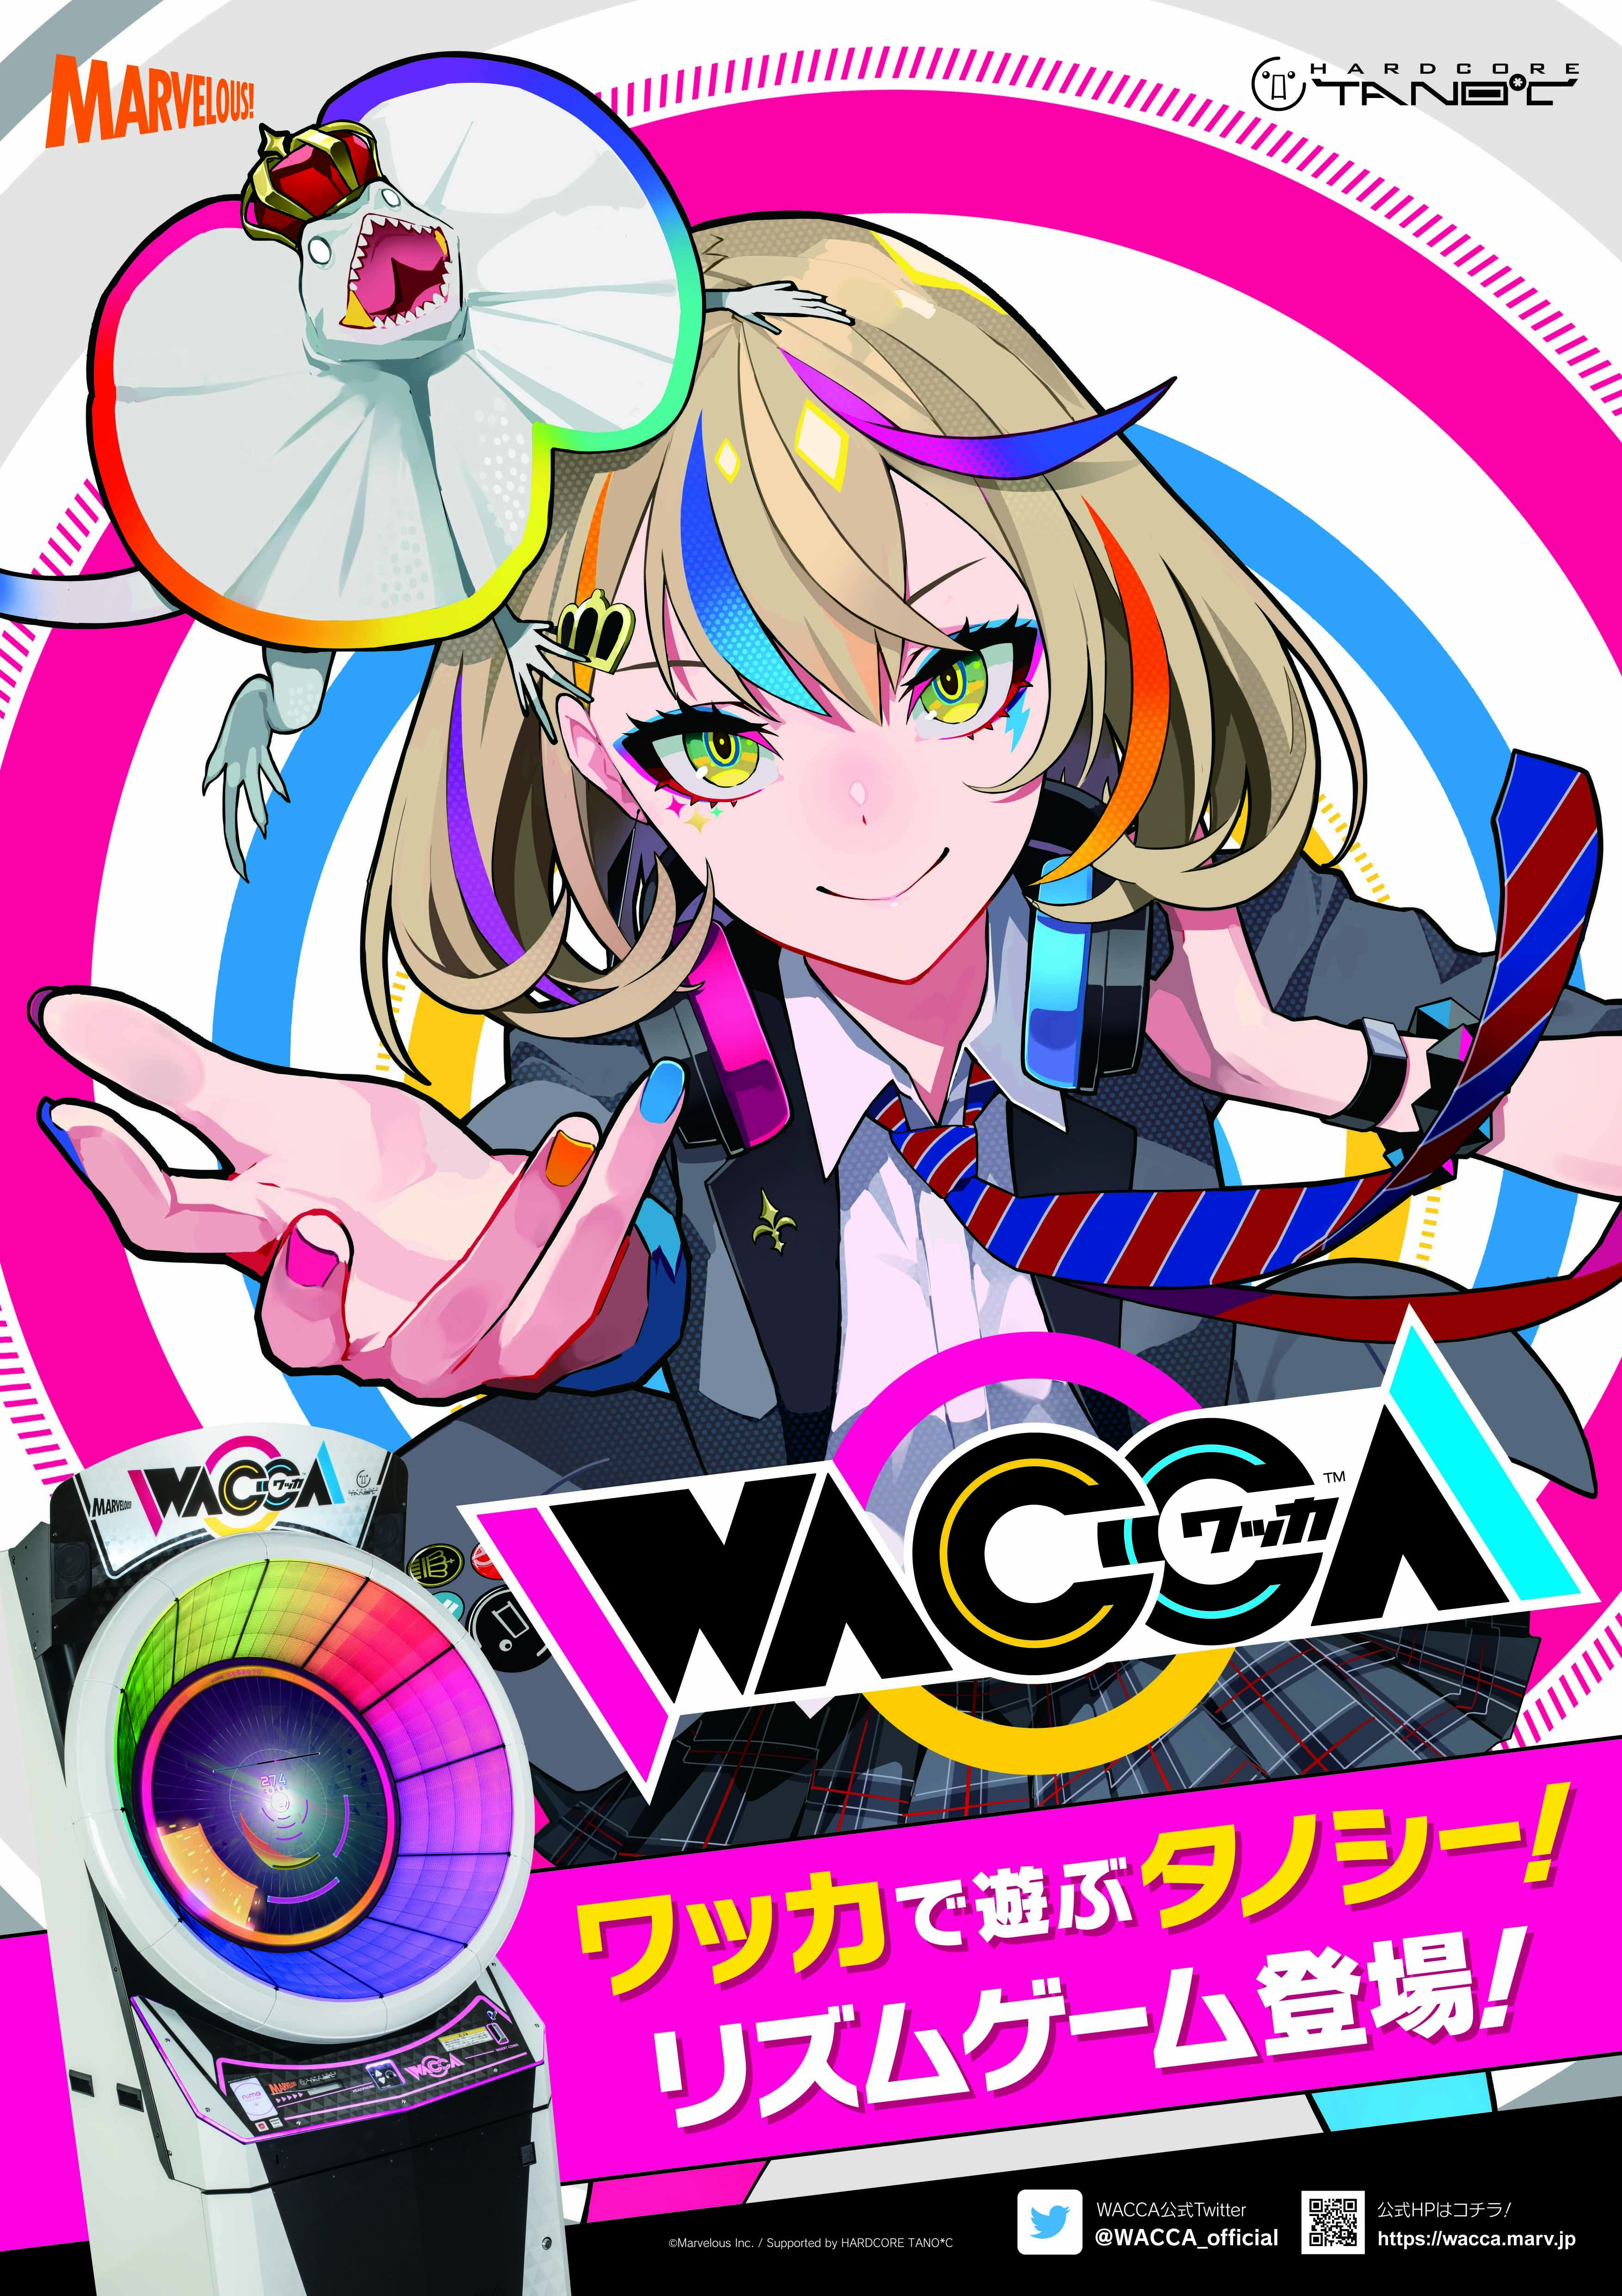 アーケード向け新作リズムゲーム Wacca ワッカ 稼働開始 2 5次元ミュージカルやアニメ作品楽曲を多数収録 アキバ総研